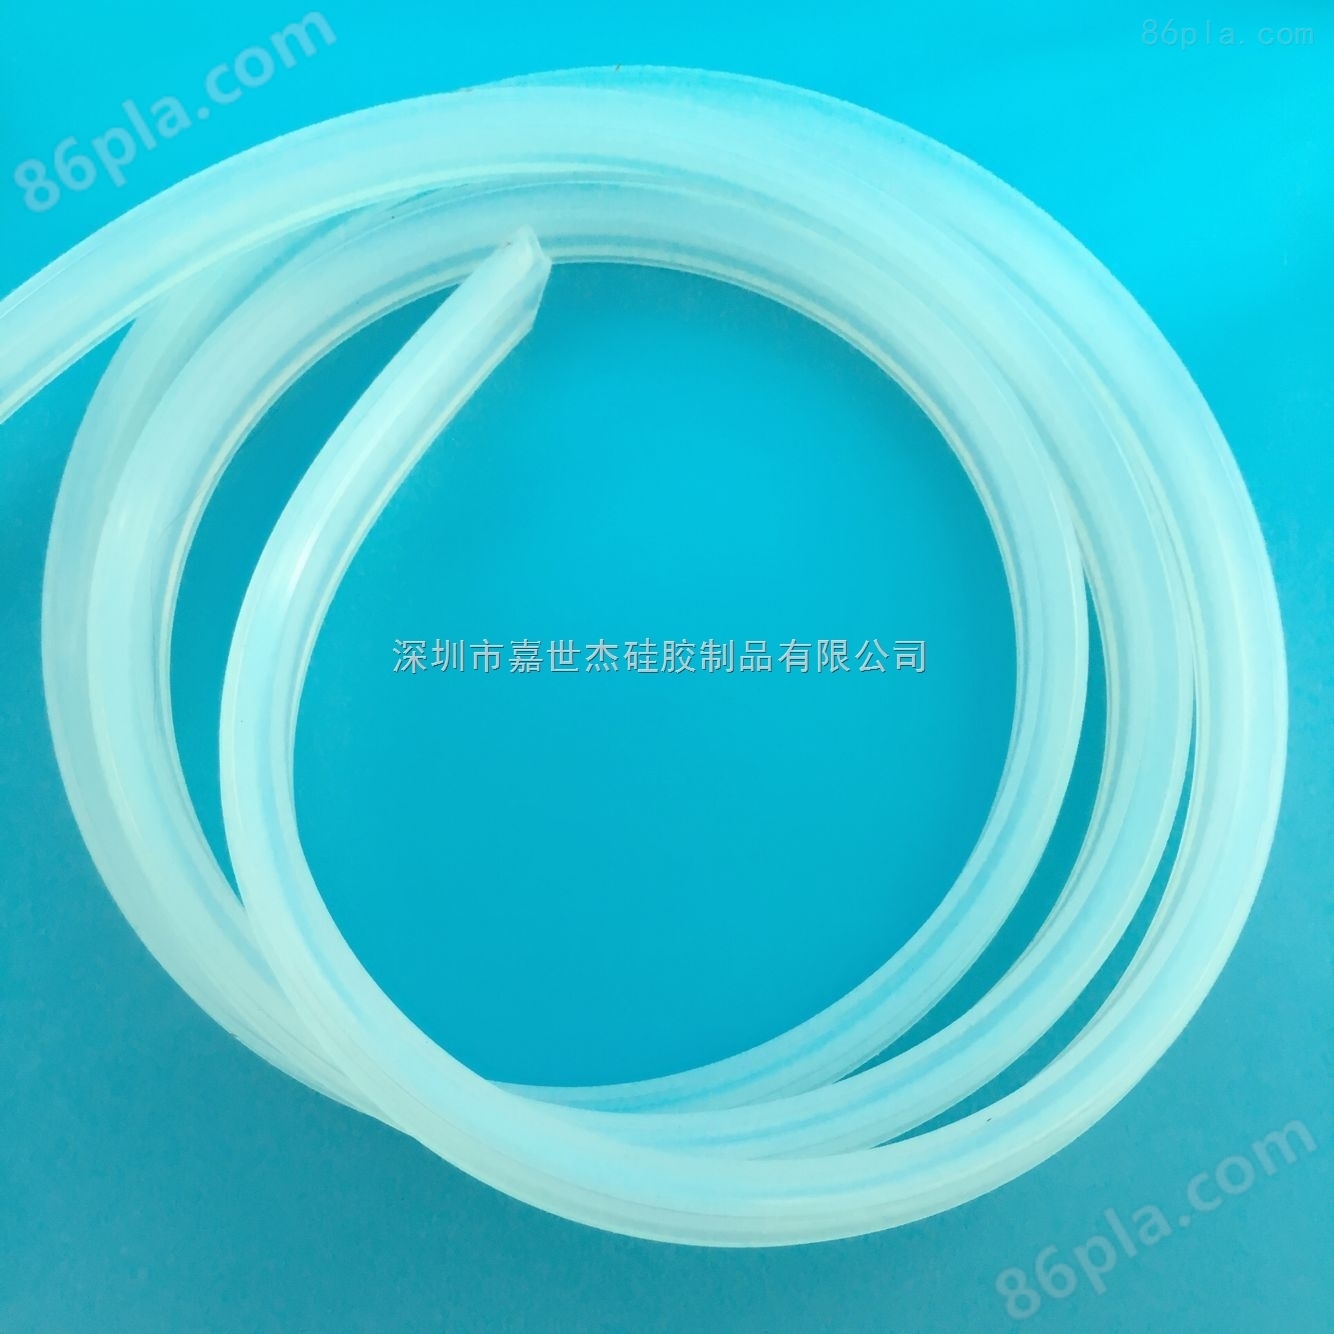 耐高温硅胶钢丝软管 编织硅胶螺纹管 带线硅胶复合管